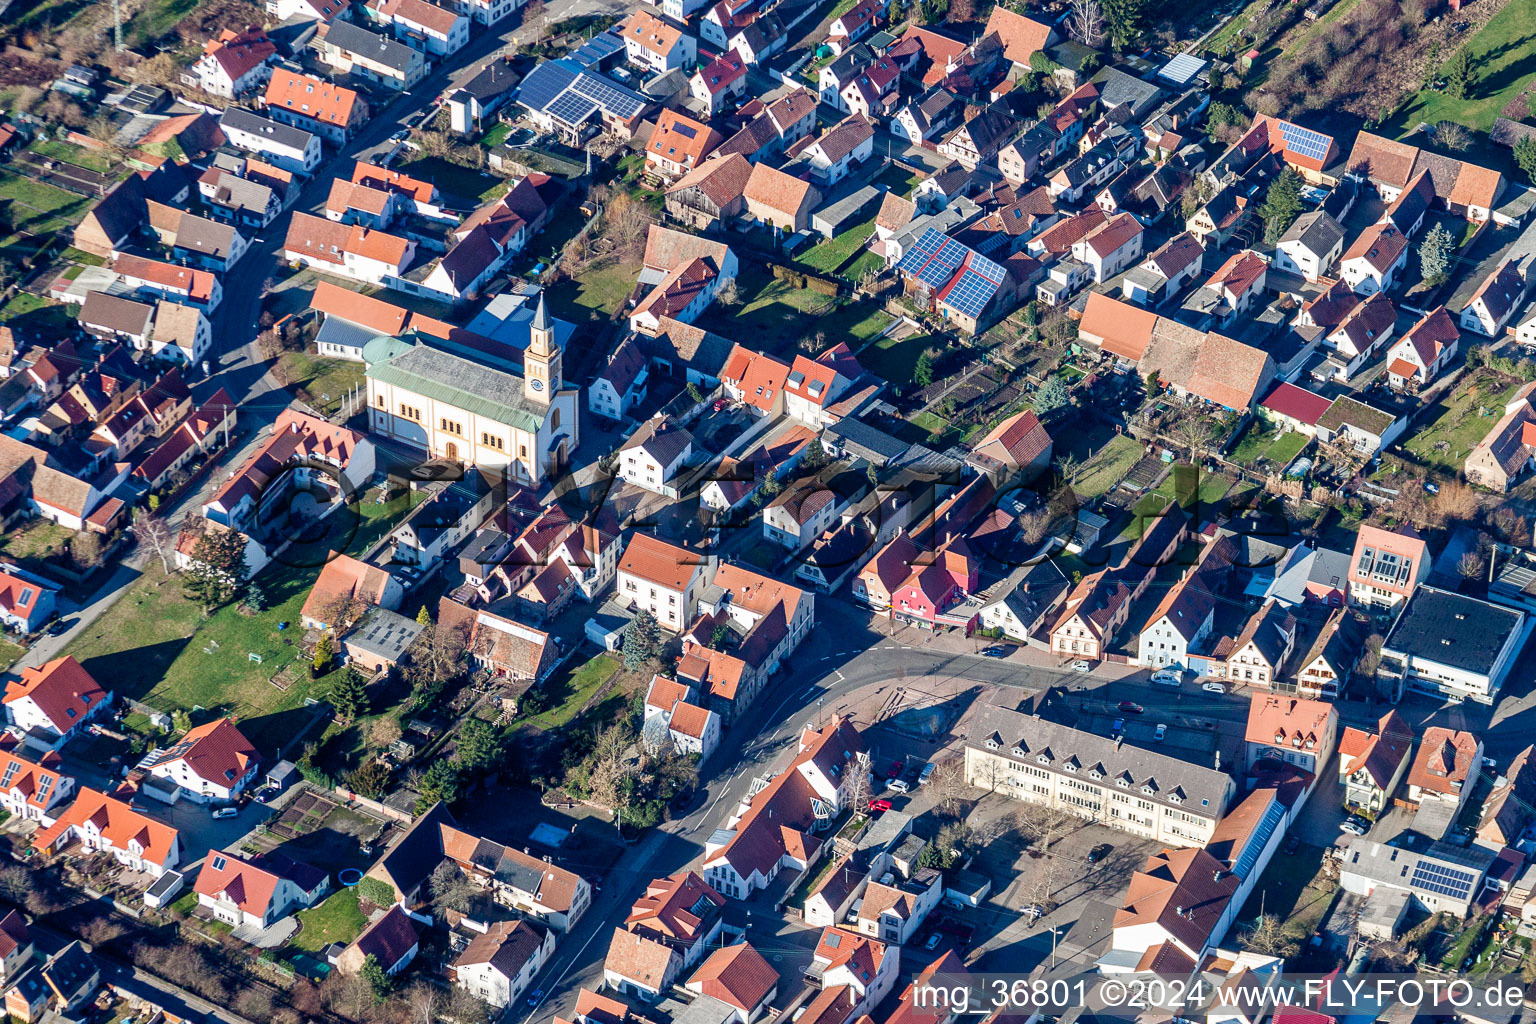 Photographie aérienne de Bâtiment d'église au centre du village à Lingenfeld dans le département Rhénanie-Palatinat, Allemagne